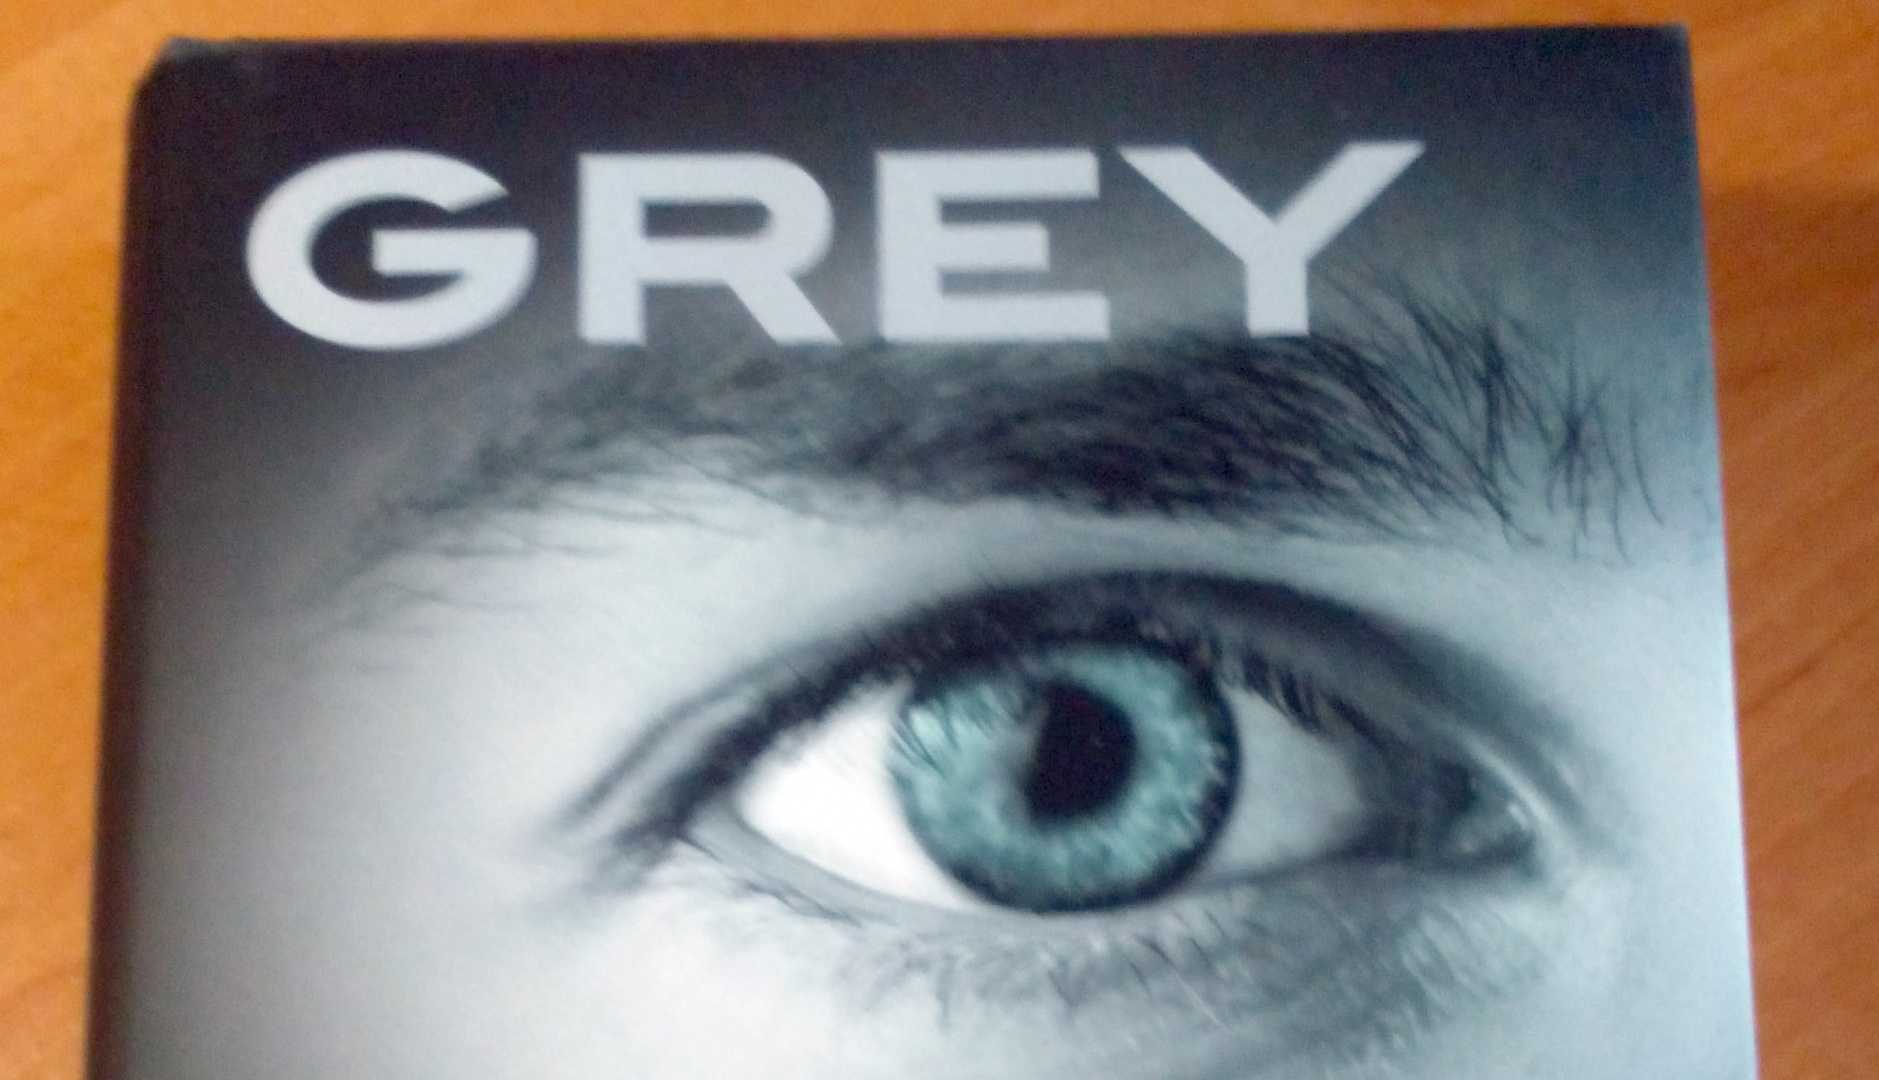 Grey2